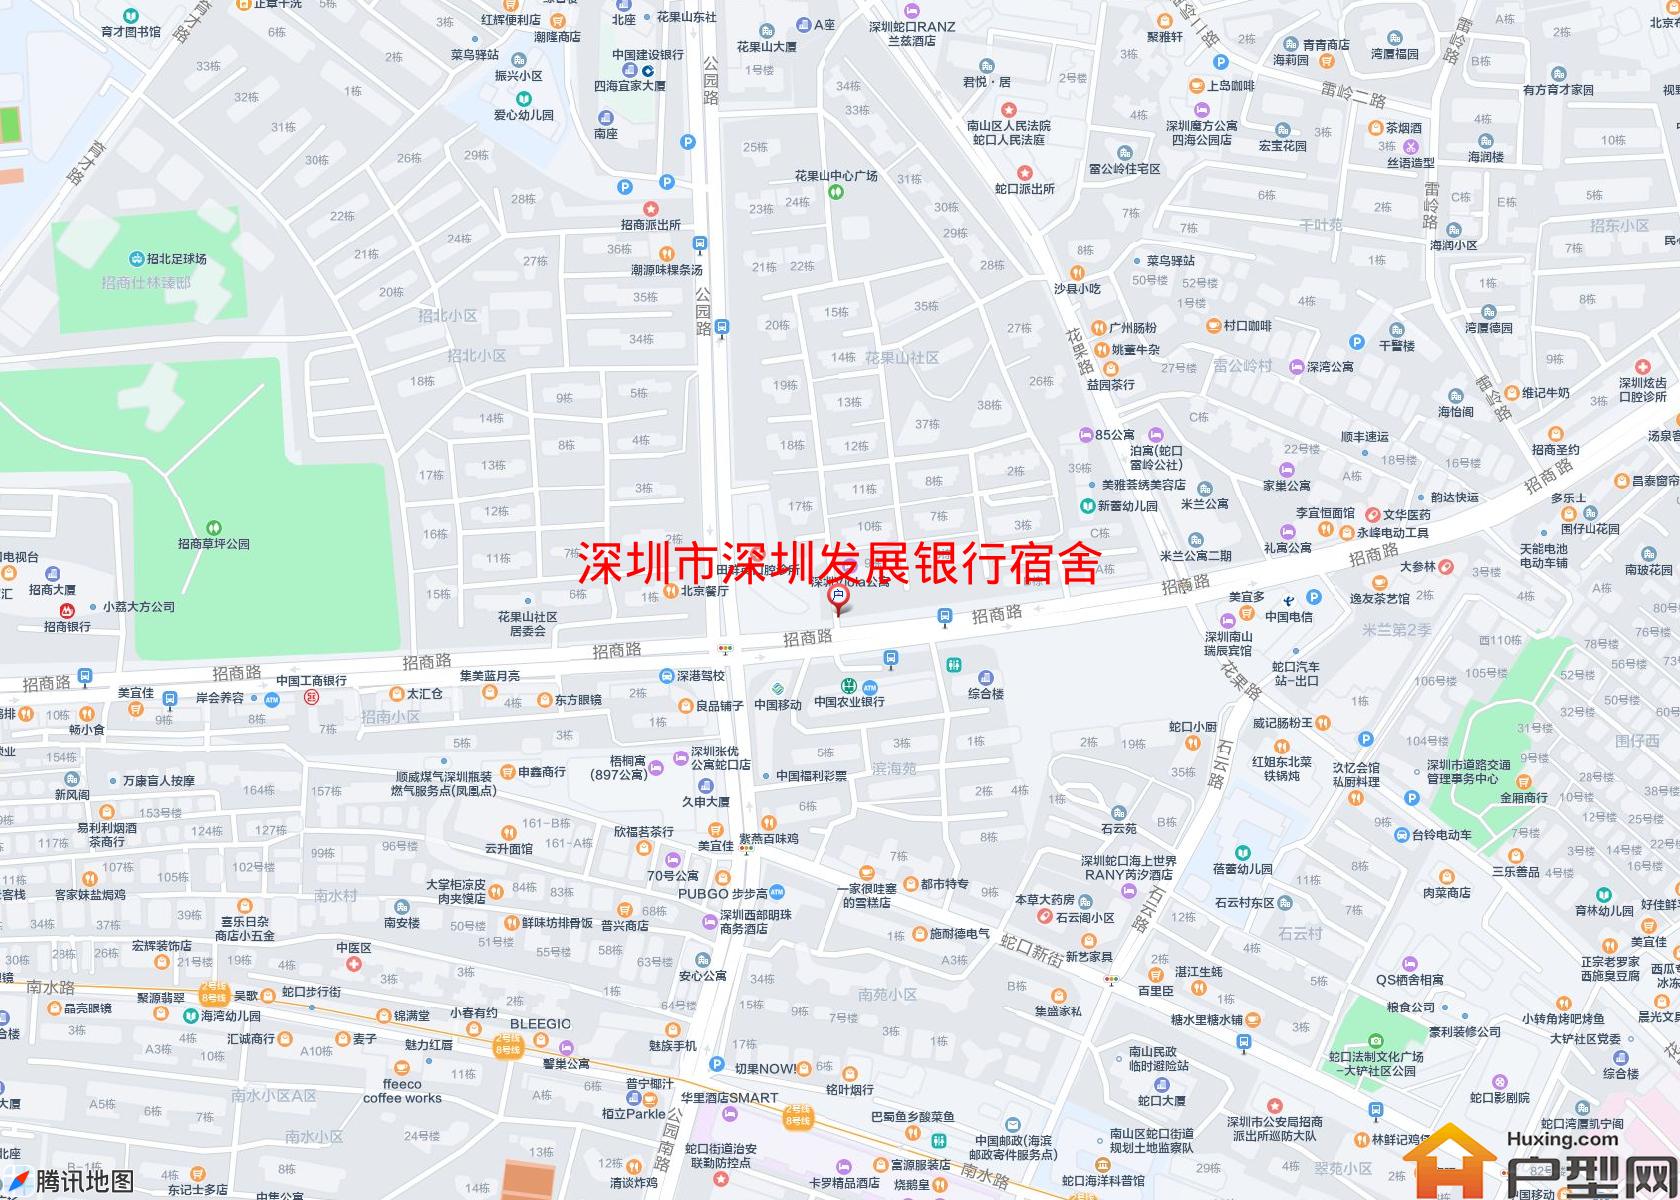 深圳发展银行宿舍小区 - 户型网